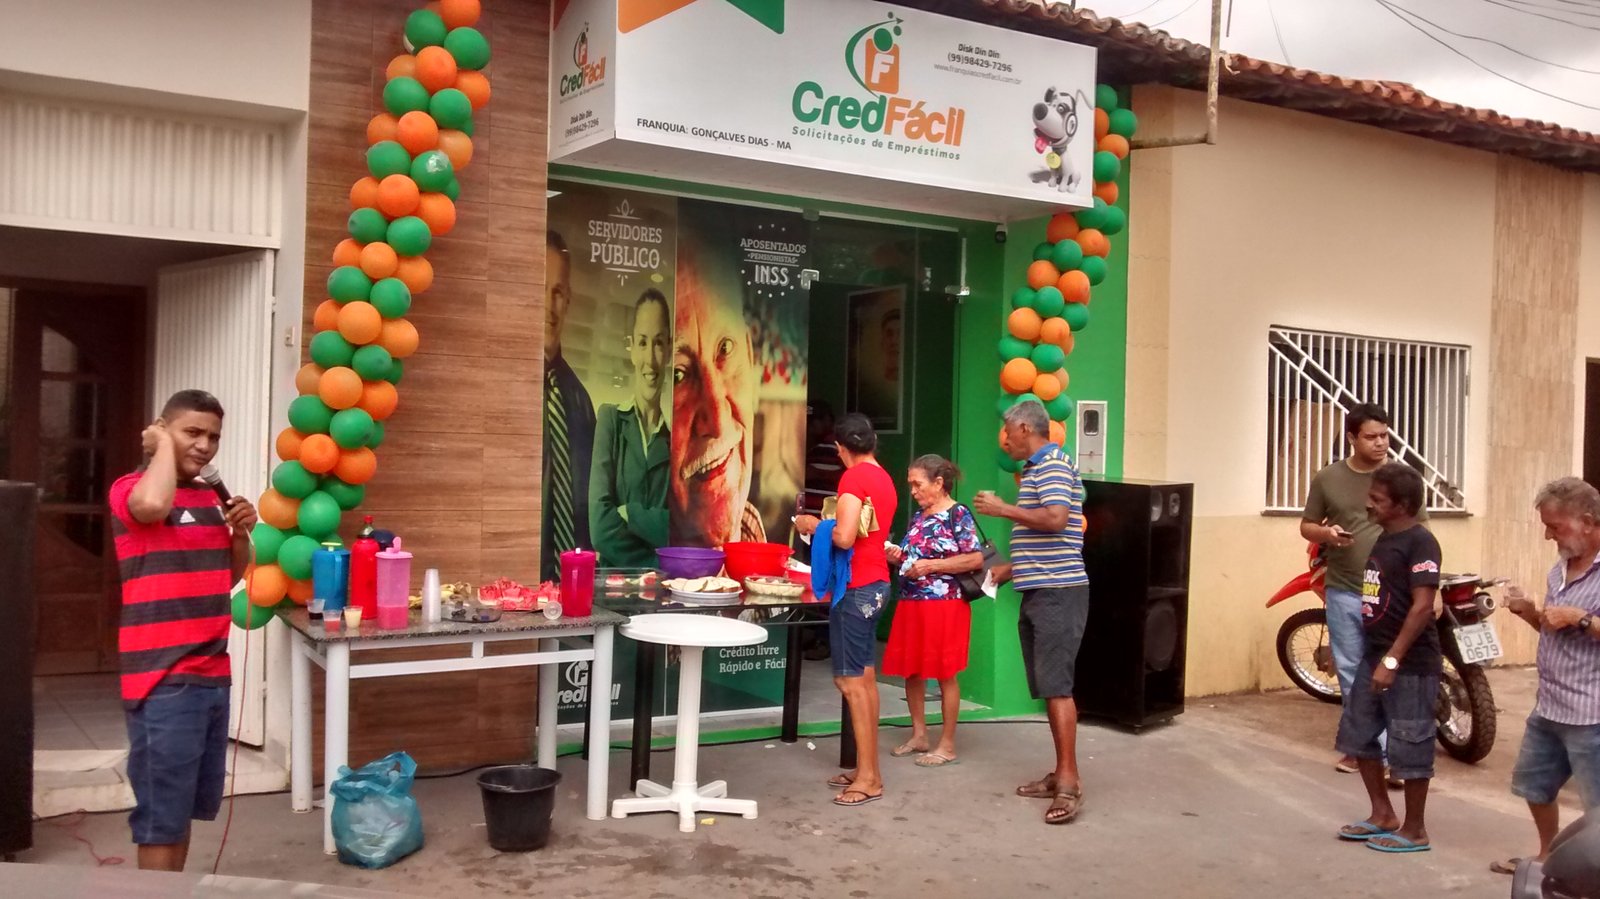 Cred Fácil inaugura unidade de créditos em Gonçalves Dias